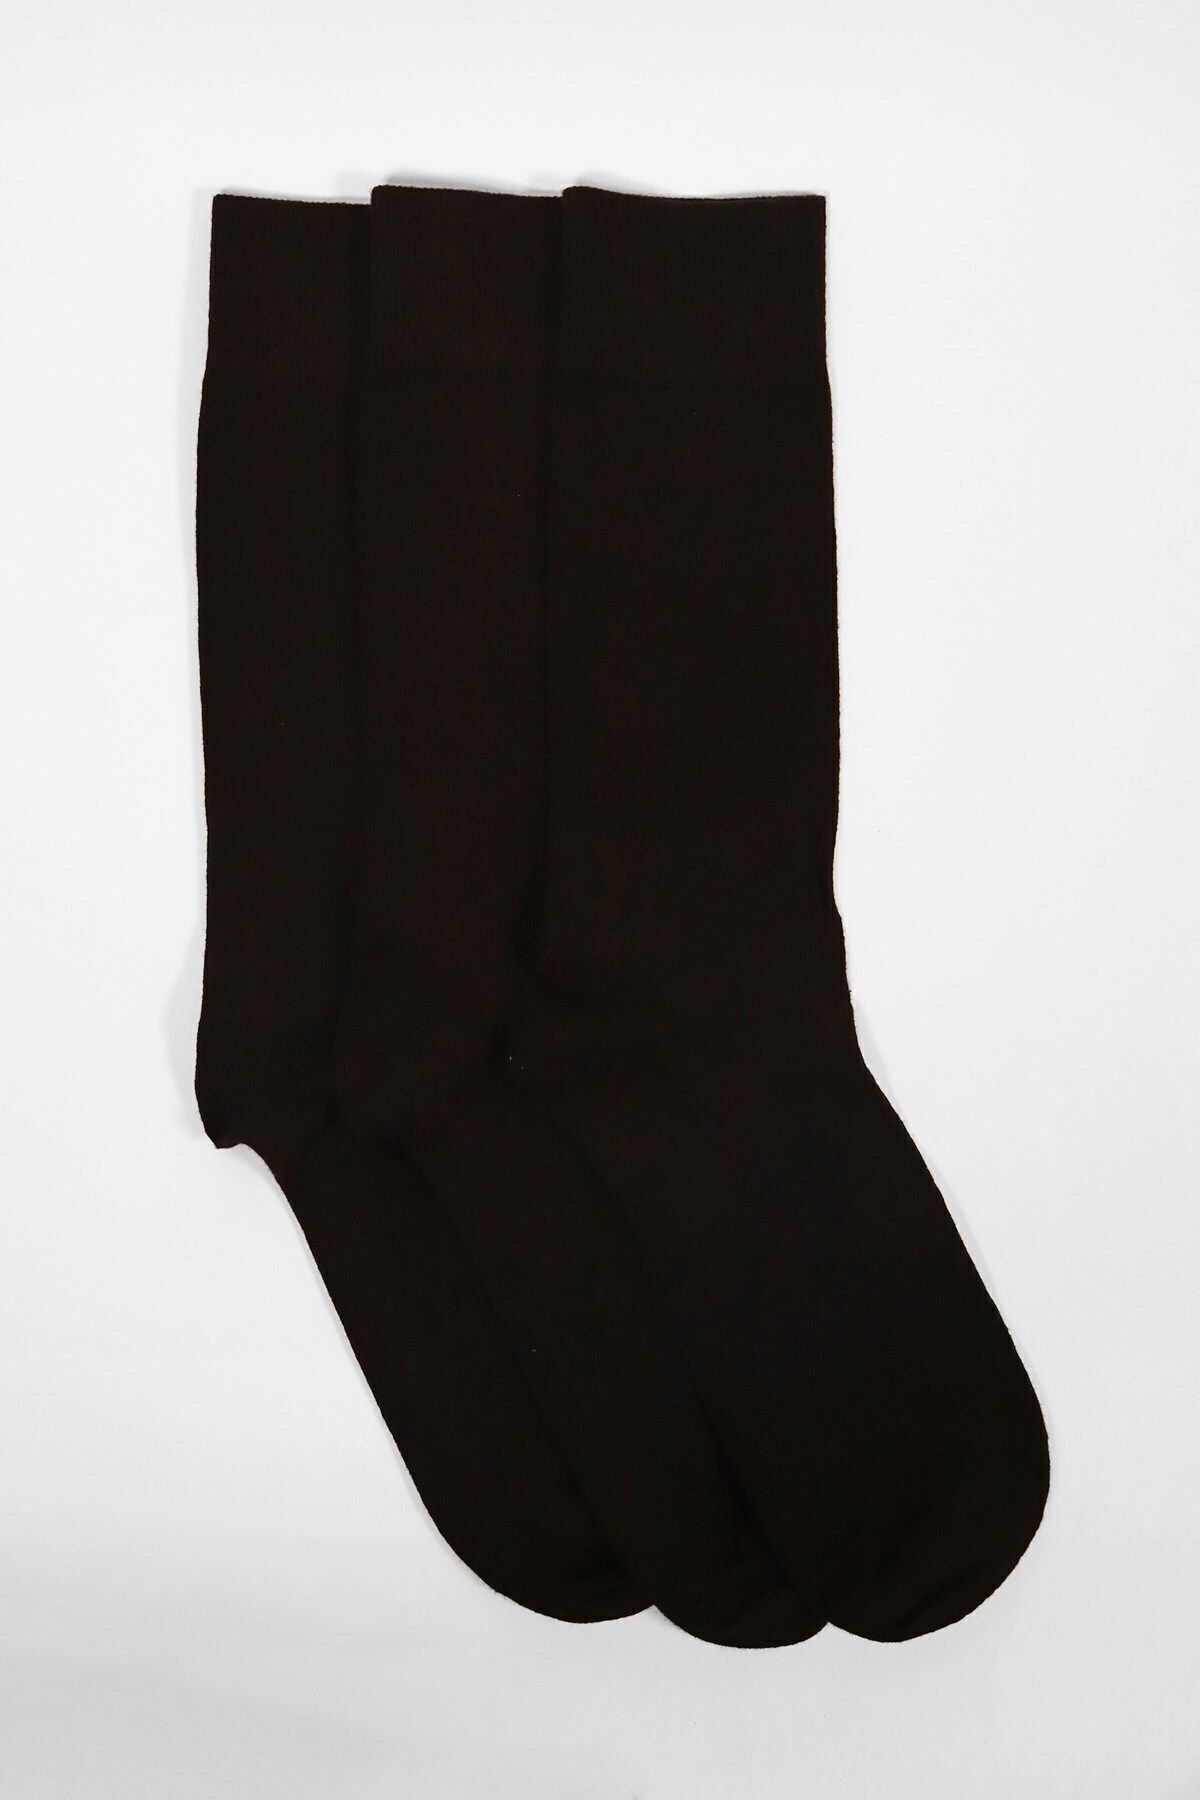 Katia & Bony 3'lü Paket Family Erkek Soket Çorap Siyah/siyah/siyah